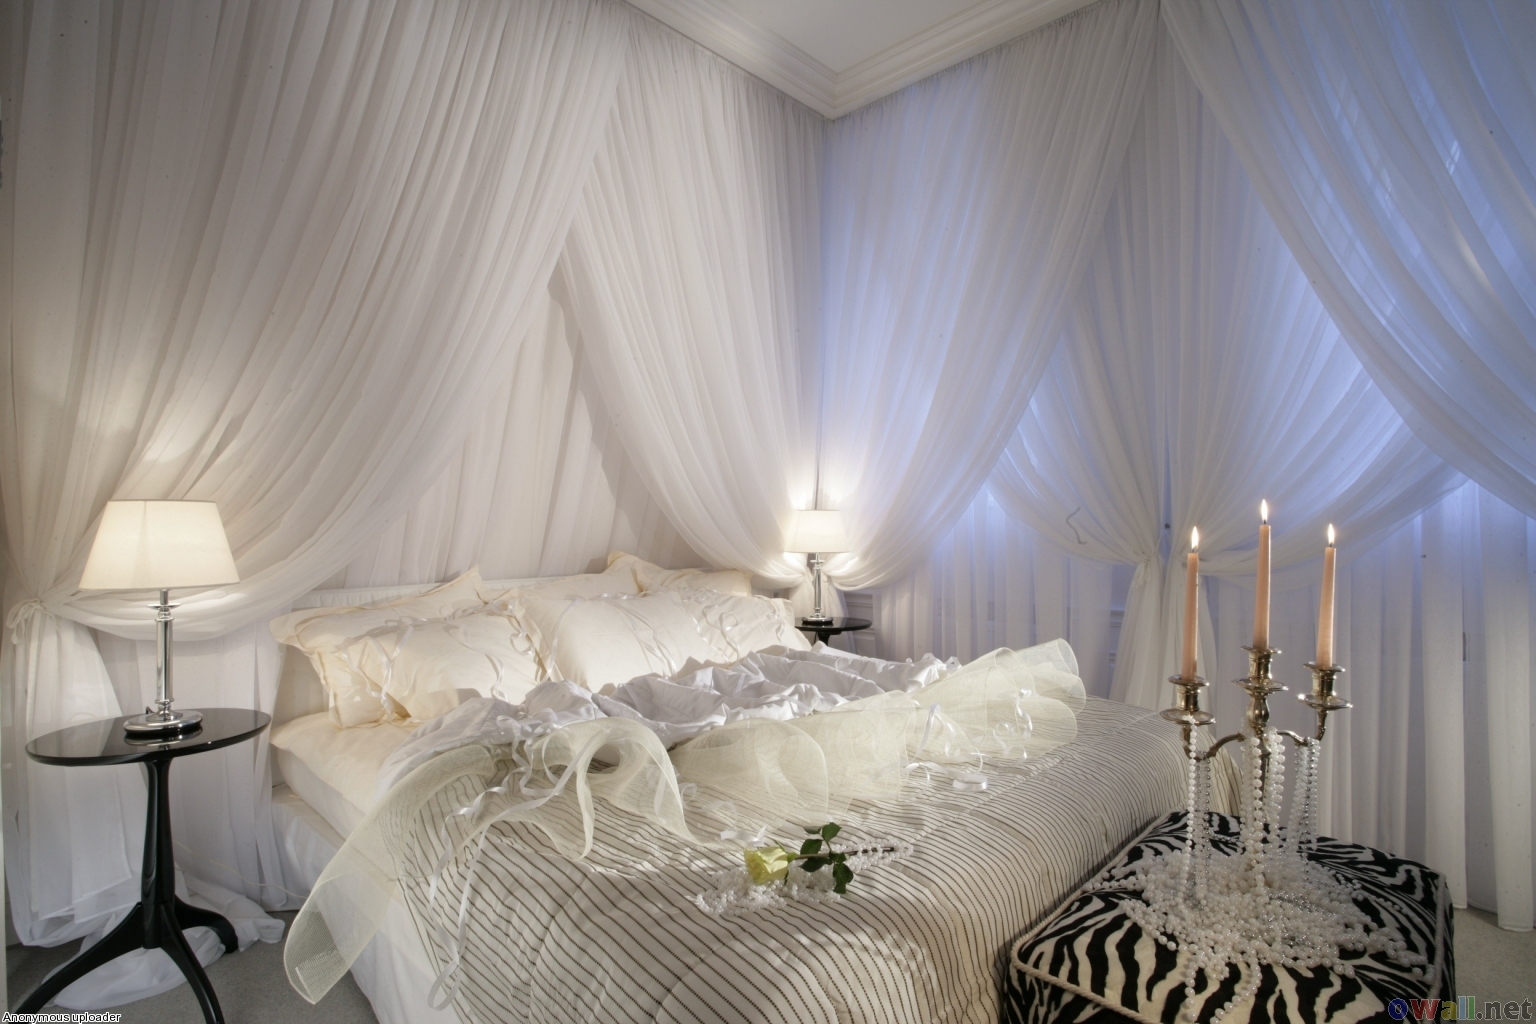 Romantic Bedroom Decor